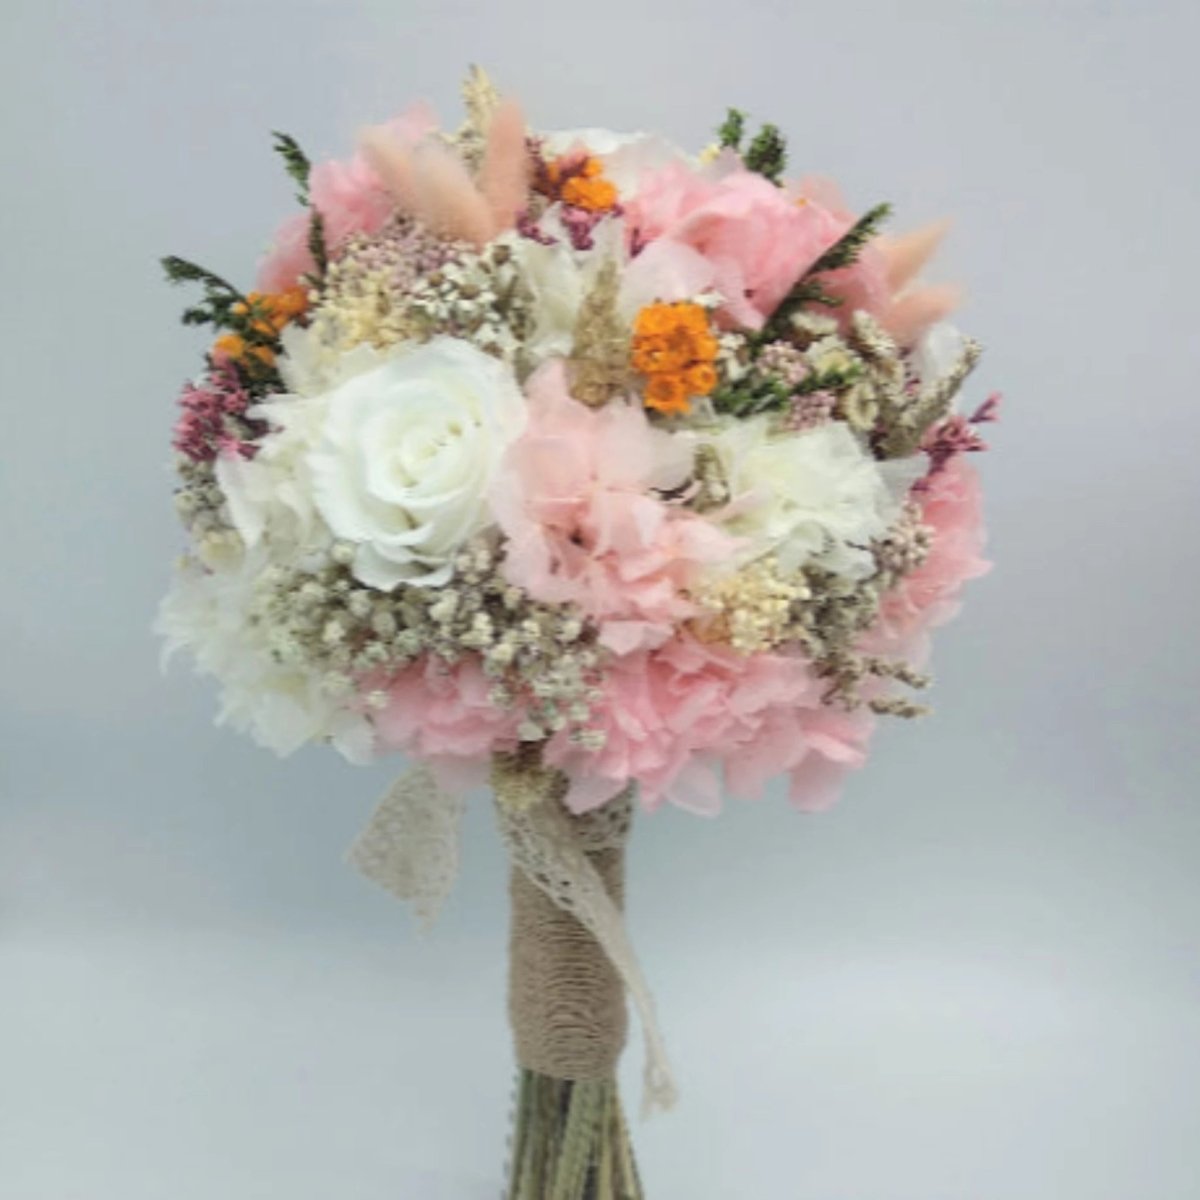 Bouquet con flores eternas mod.5 Floreate